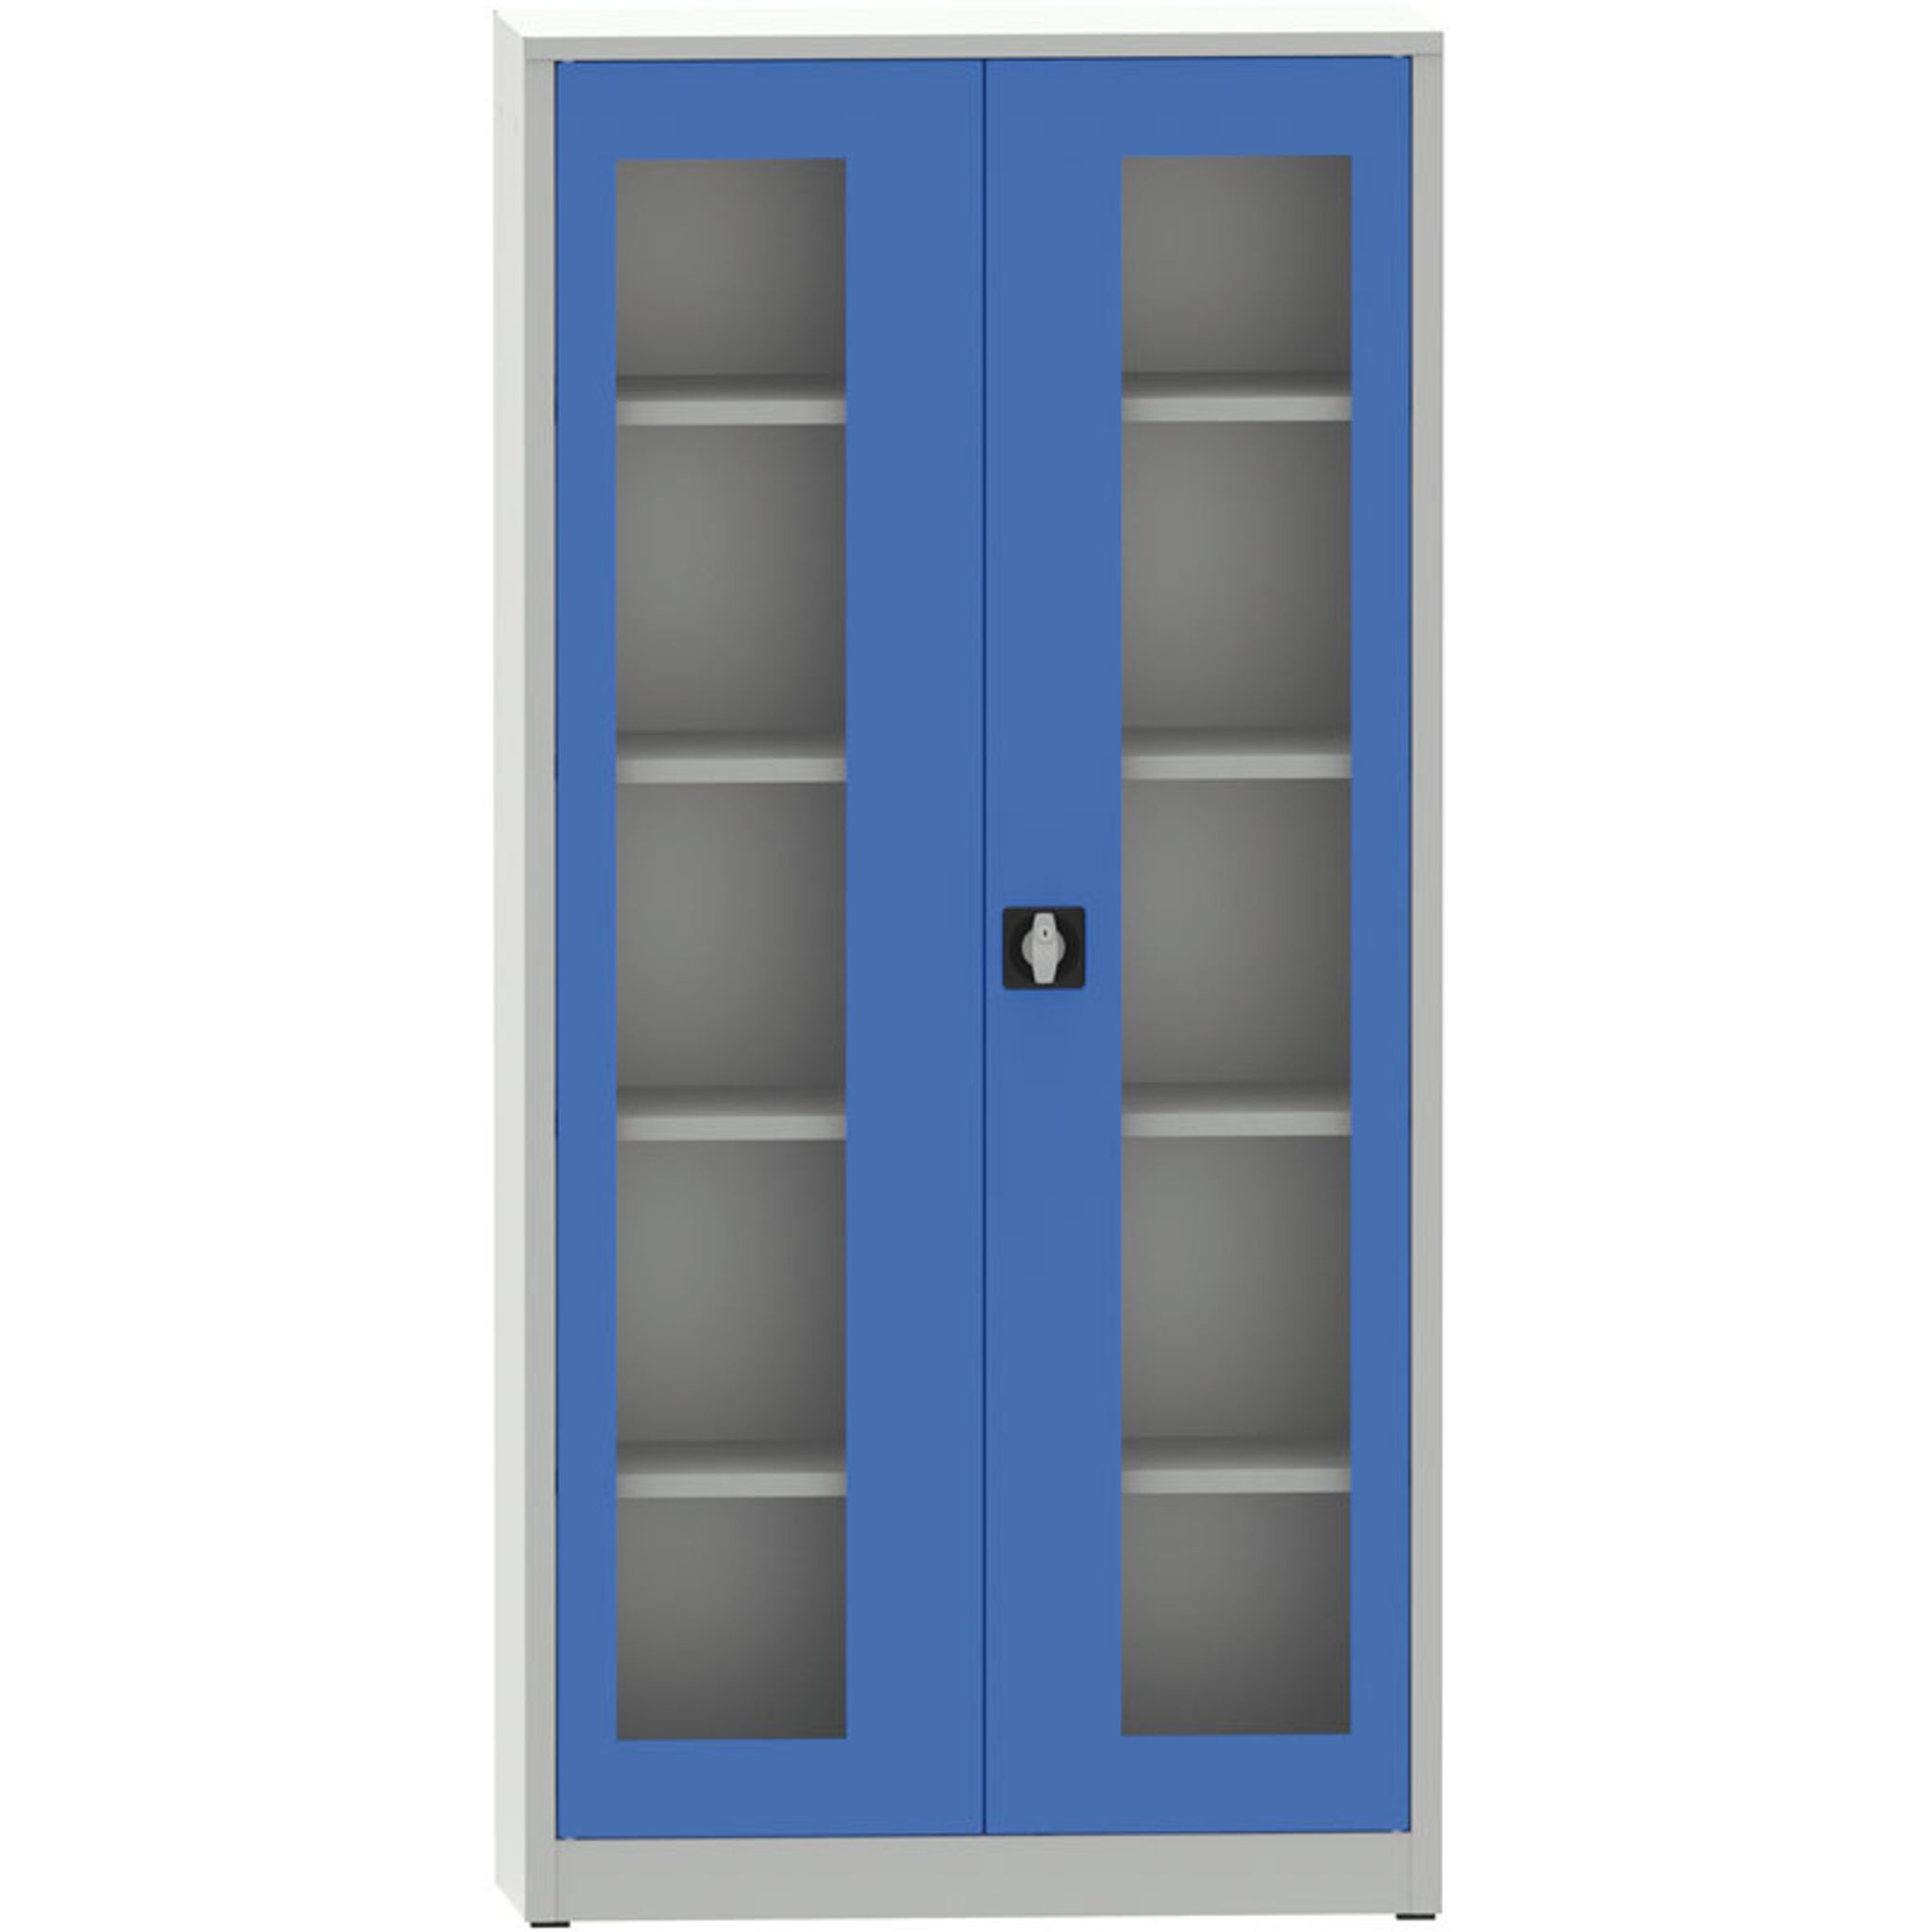 Svařovaná policová skříň s prosklenými dveřmi, 1950 x 950 x 500 mm, šedá/modrá